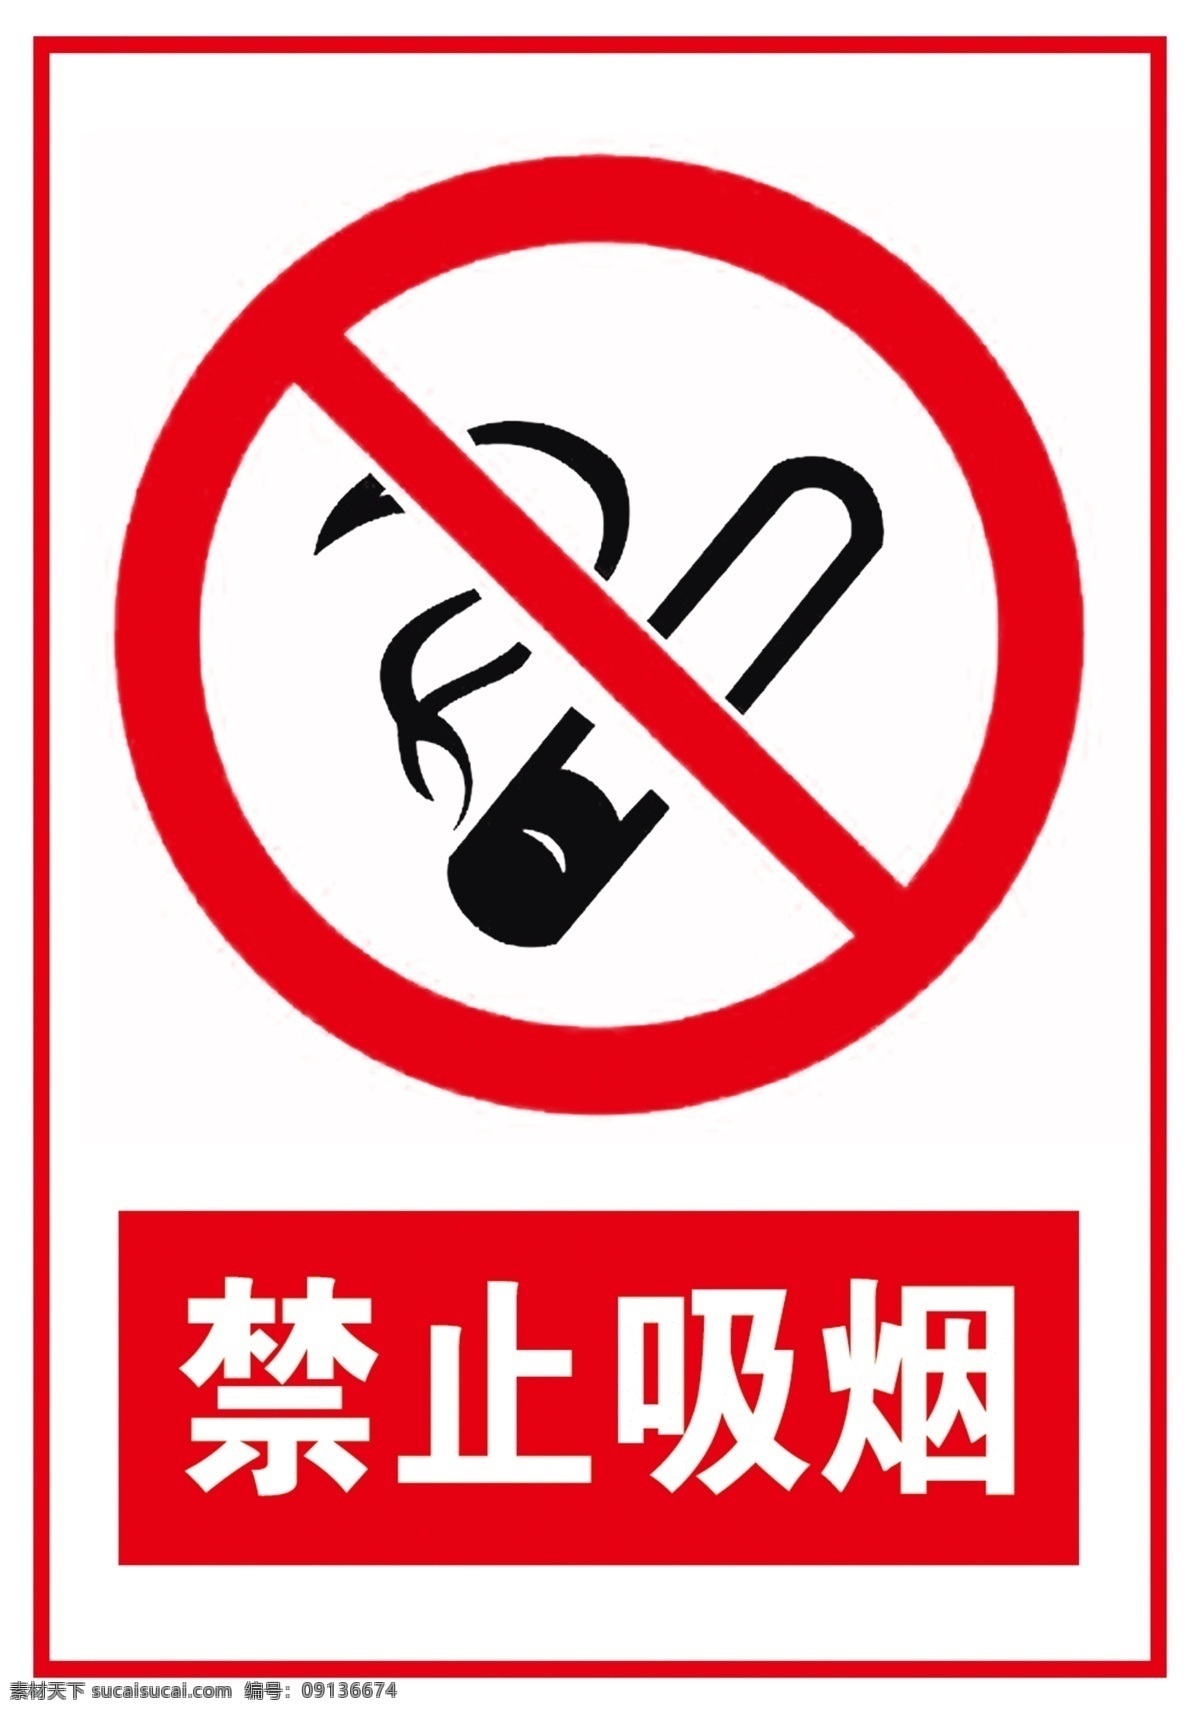 禁止 吸烟 免 扣 图 logo 禁止吸烟标志 禁止吸烟 禁止吸烟标识 禁止吸烟免扣 公共标识 标志图标 公共标识标志